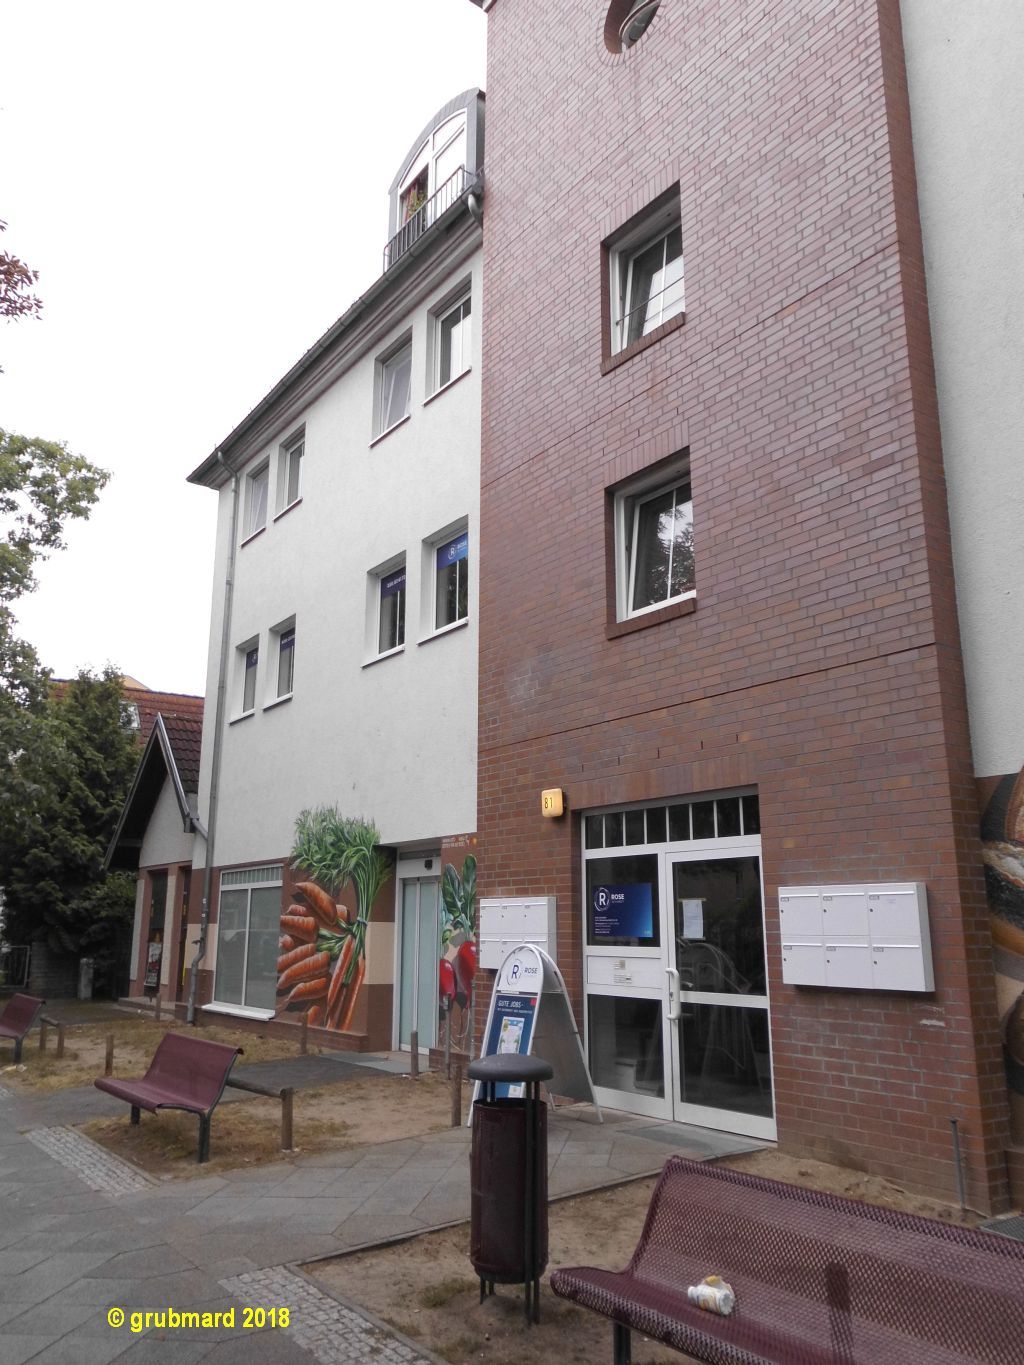 Rose Zeitarbeit GmbH in Eichwalde ⇒ in Das Örtliche